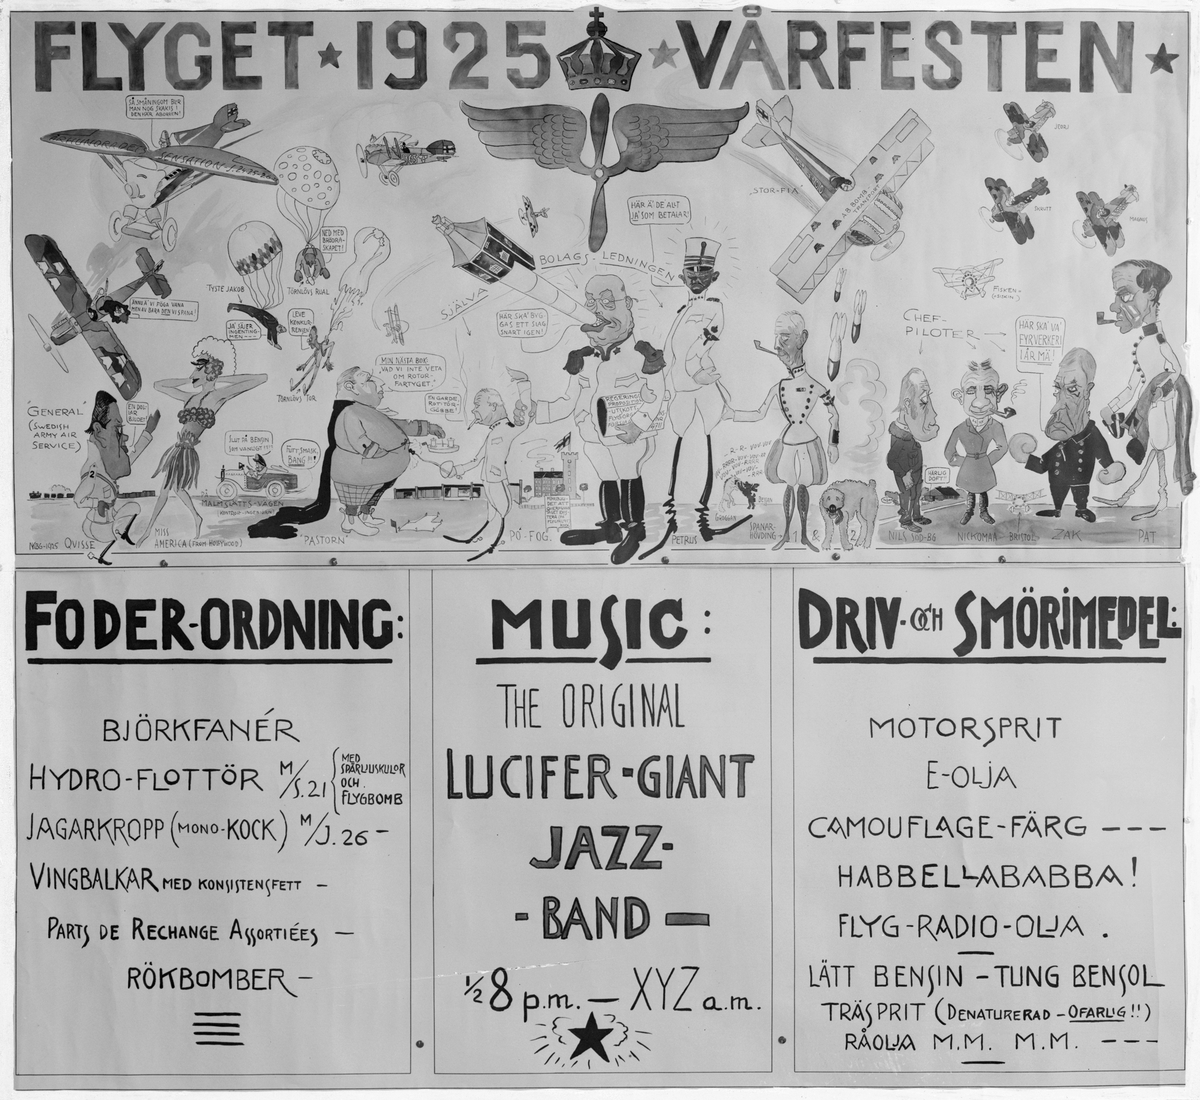 Vårfesten 1925. Affisch med karikatyrer.  Affisch för flygets vårfest på Malmen år 1925, tecknad av Nils Kindberg.  Karikatyrer av personal vid Flygkompaniet på Malmen samt program för festen.  Avfotograferad från affisch.